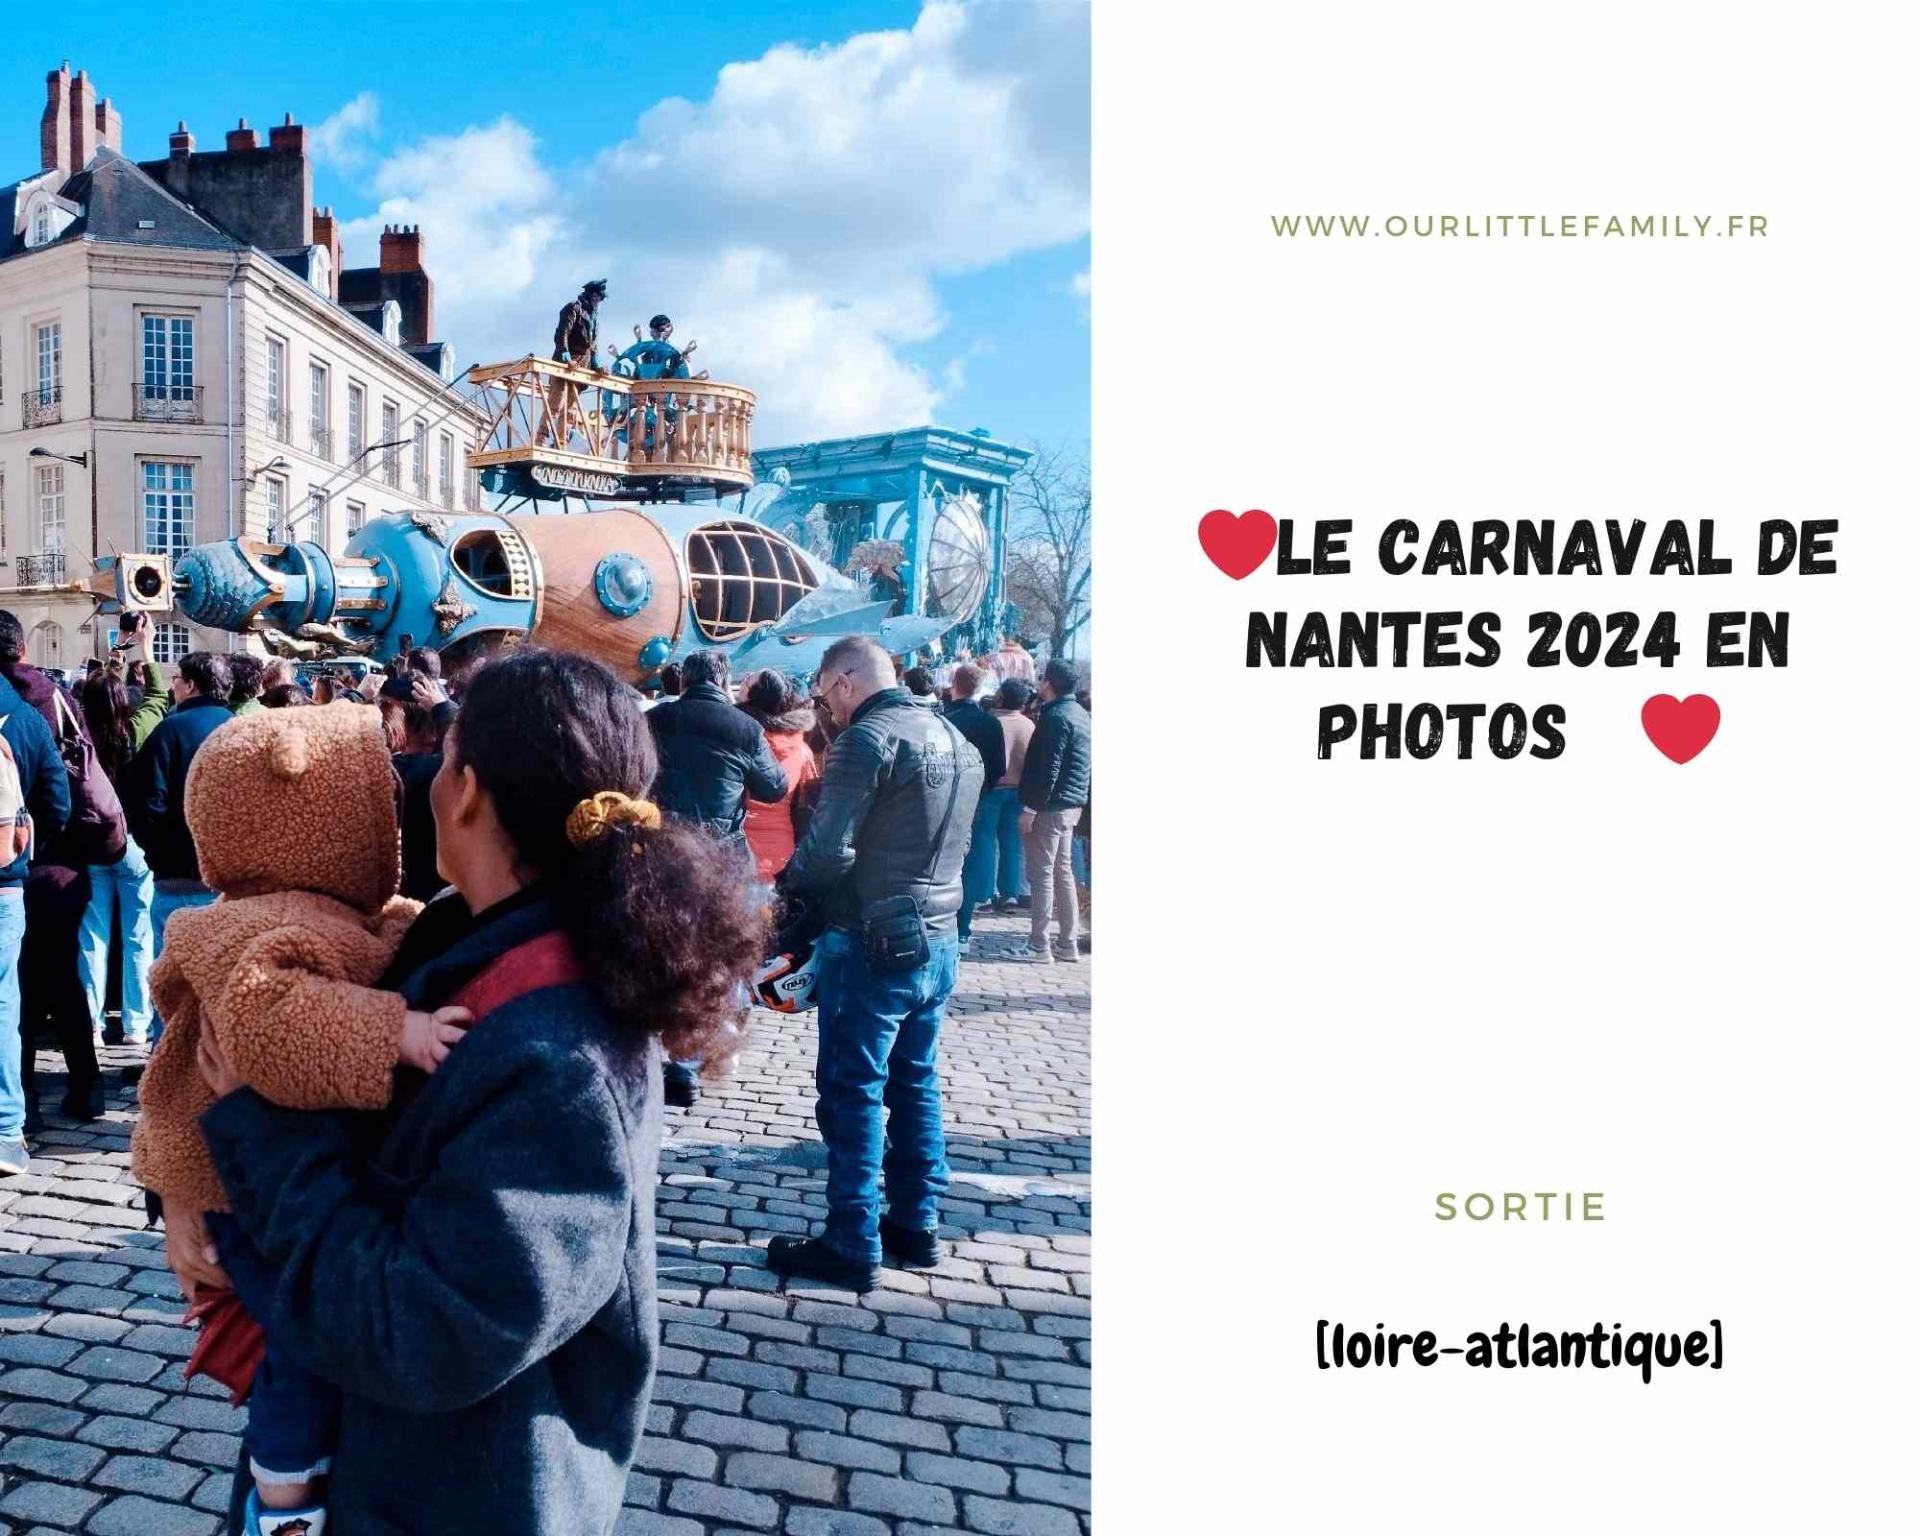 Le carnaval de nantes 2024 en photos